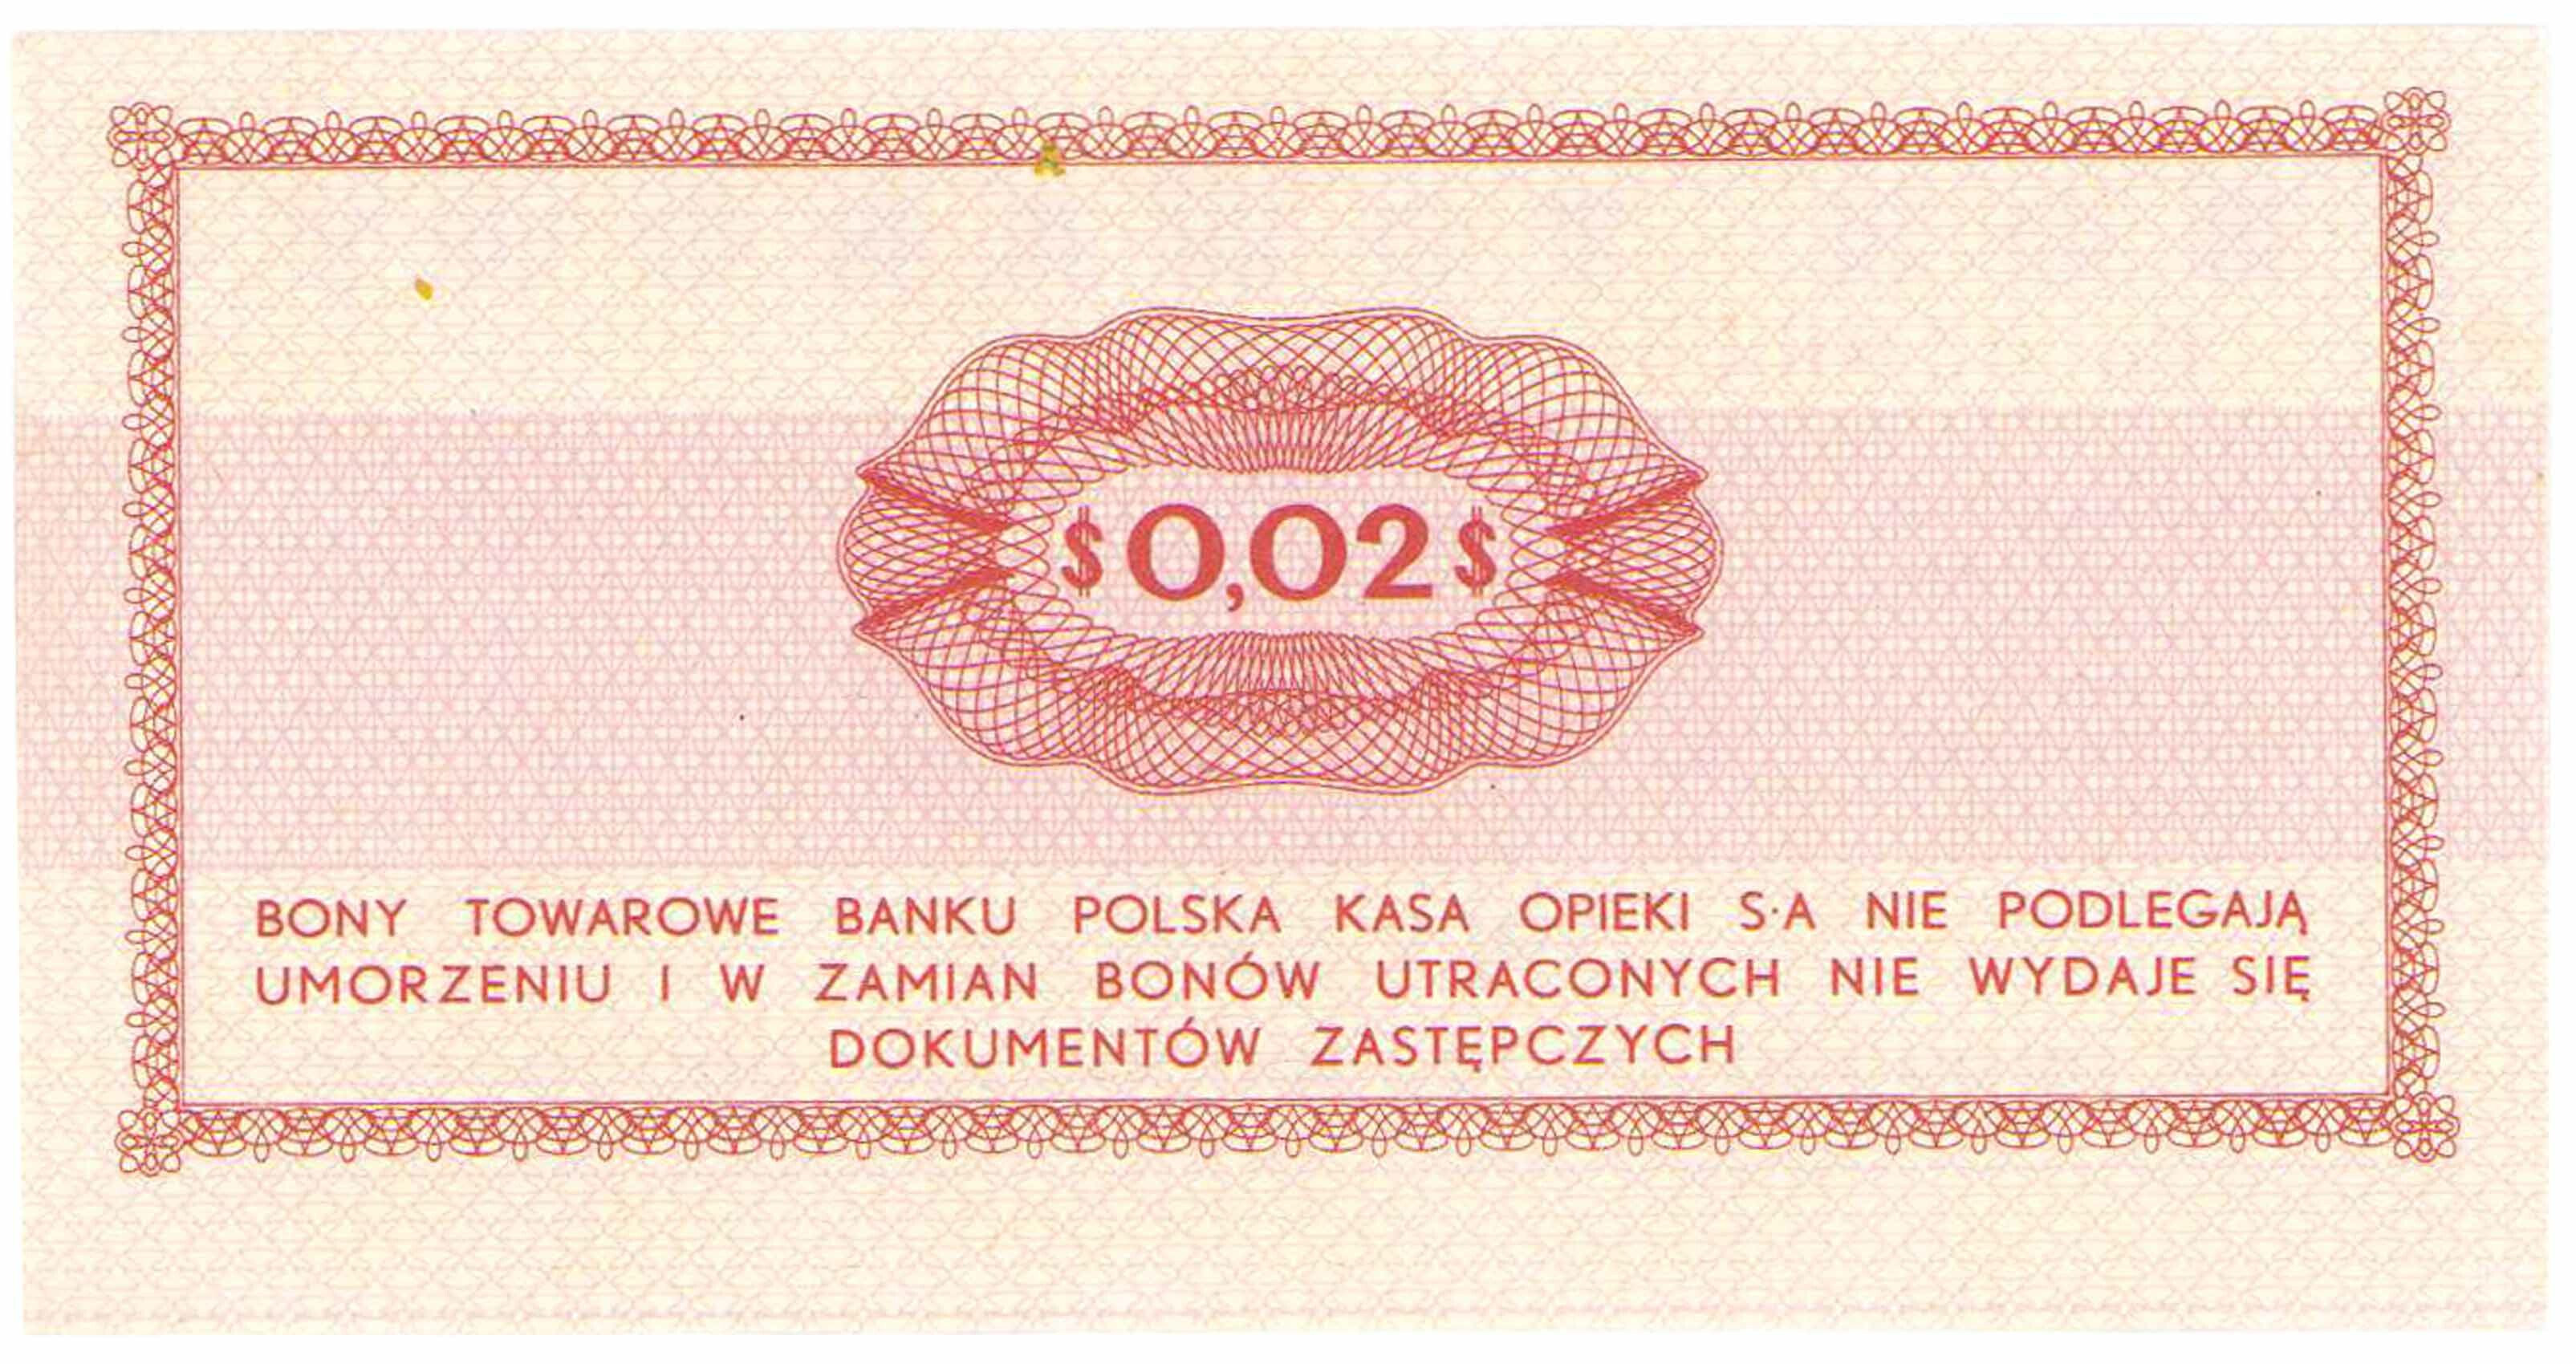 Bon towarowy PEKAO na 2 centy 1969 seria Eo - PIĘKNE